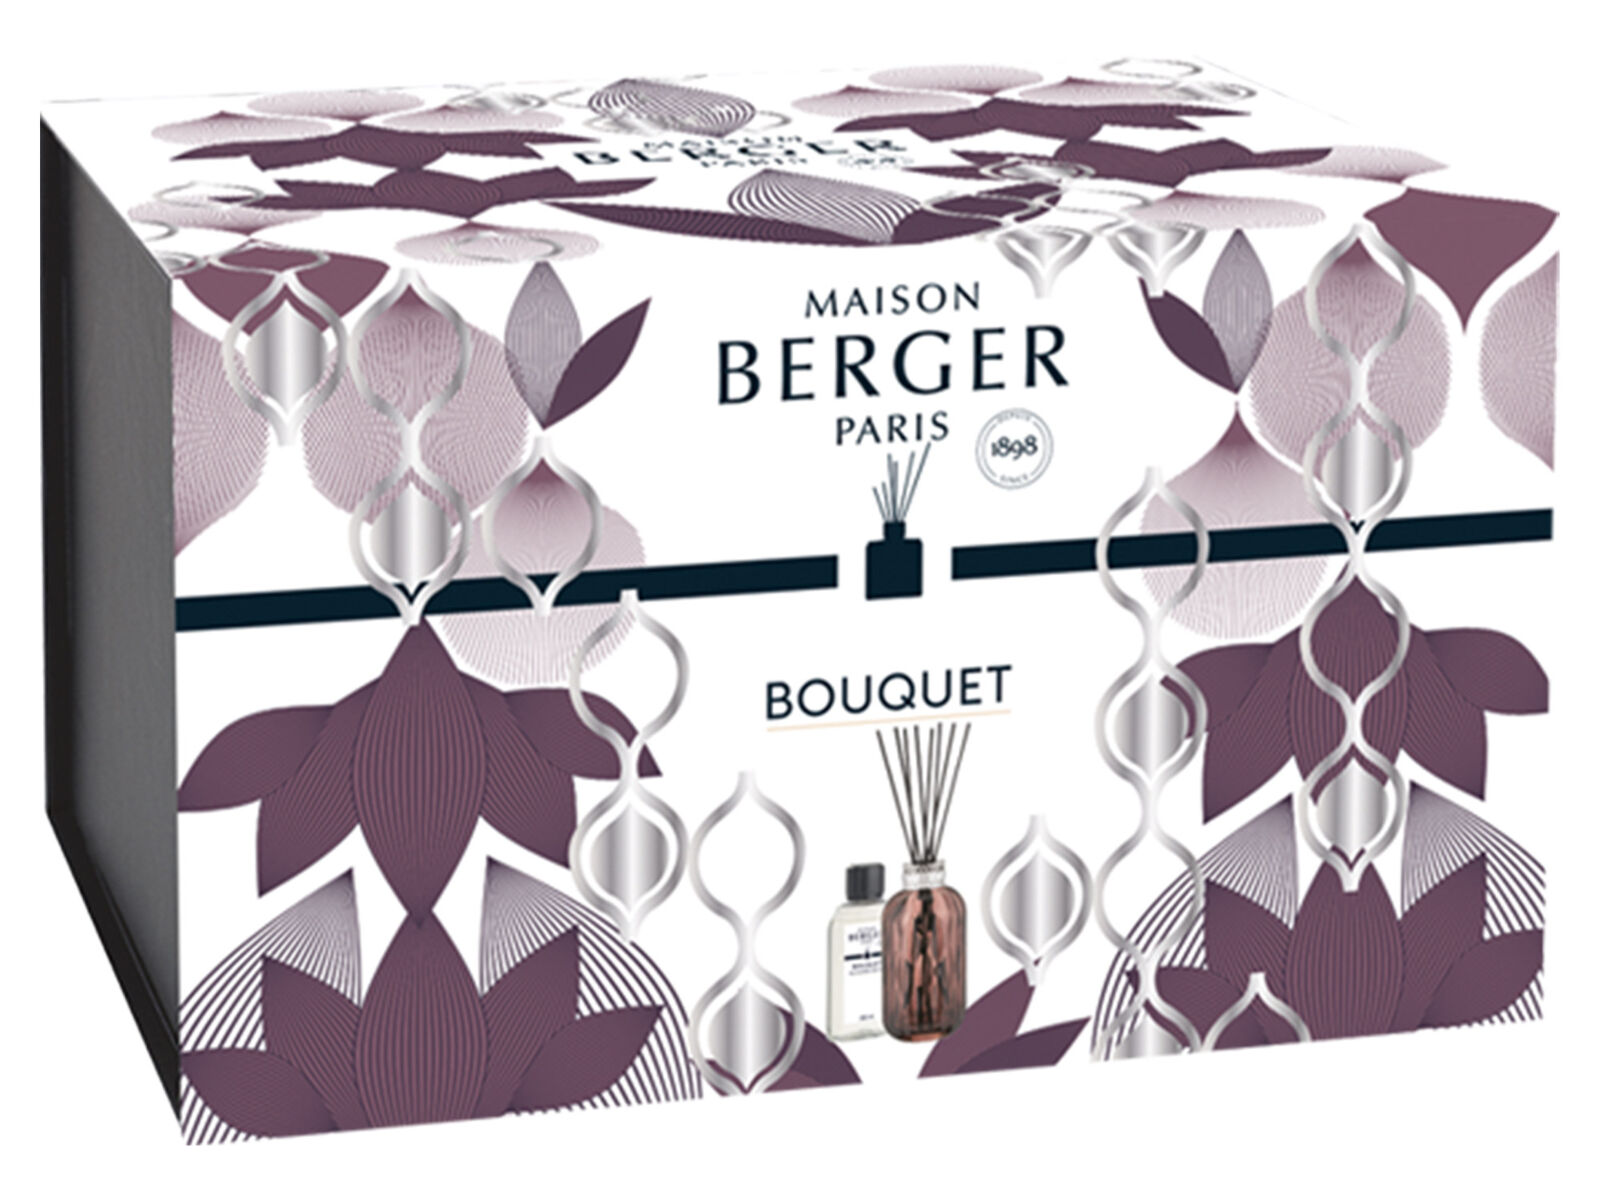 Maison Berger Duftbouquet Quintessence Prune |   Blé d'Or - Goldener Weizen 200 ml